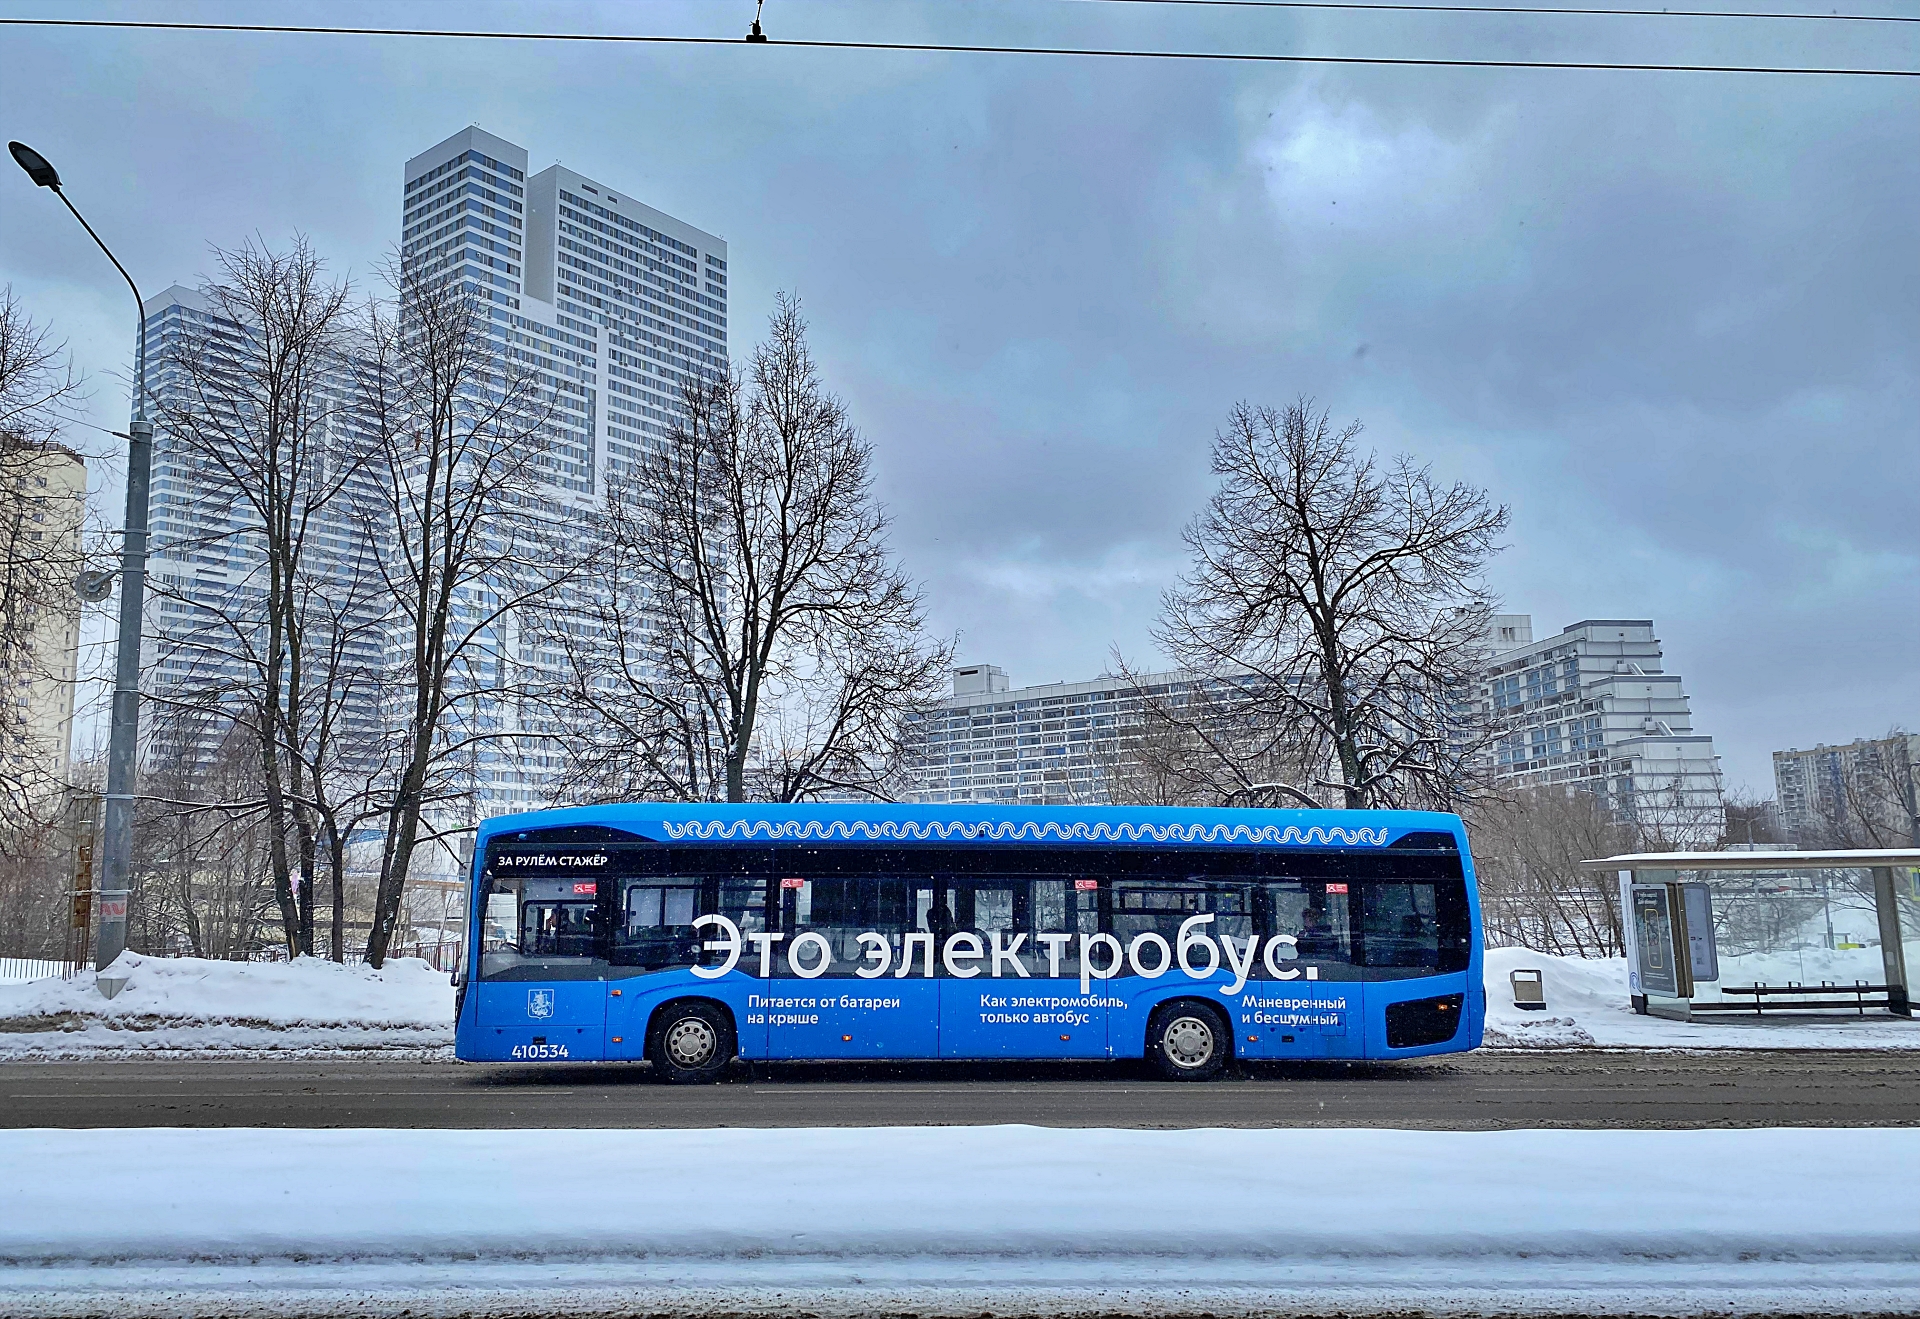 Собянин: замена автобусов на электробусы положительно скажется на столичной экологии